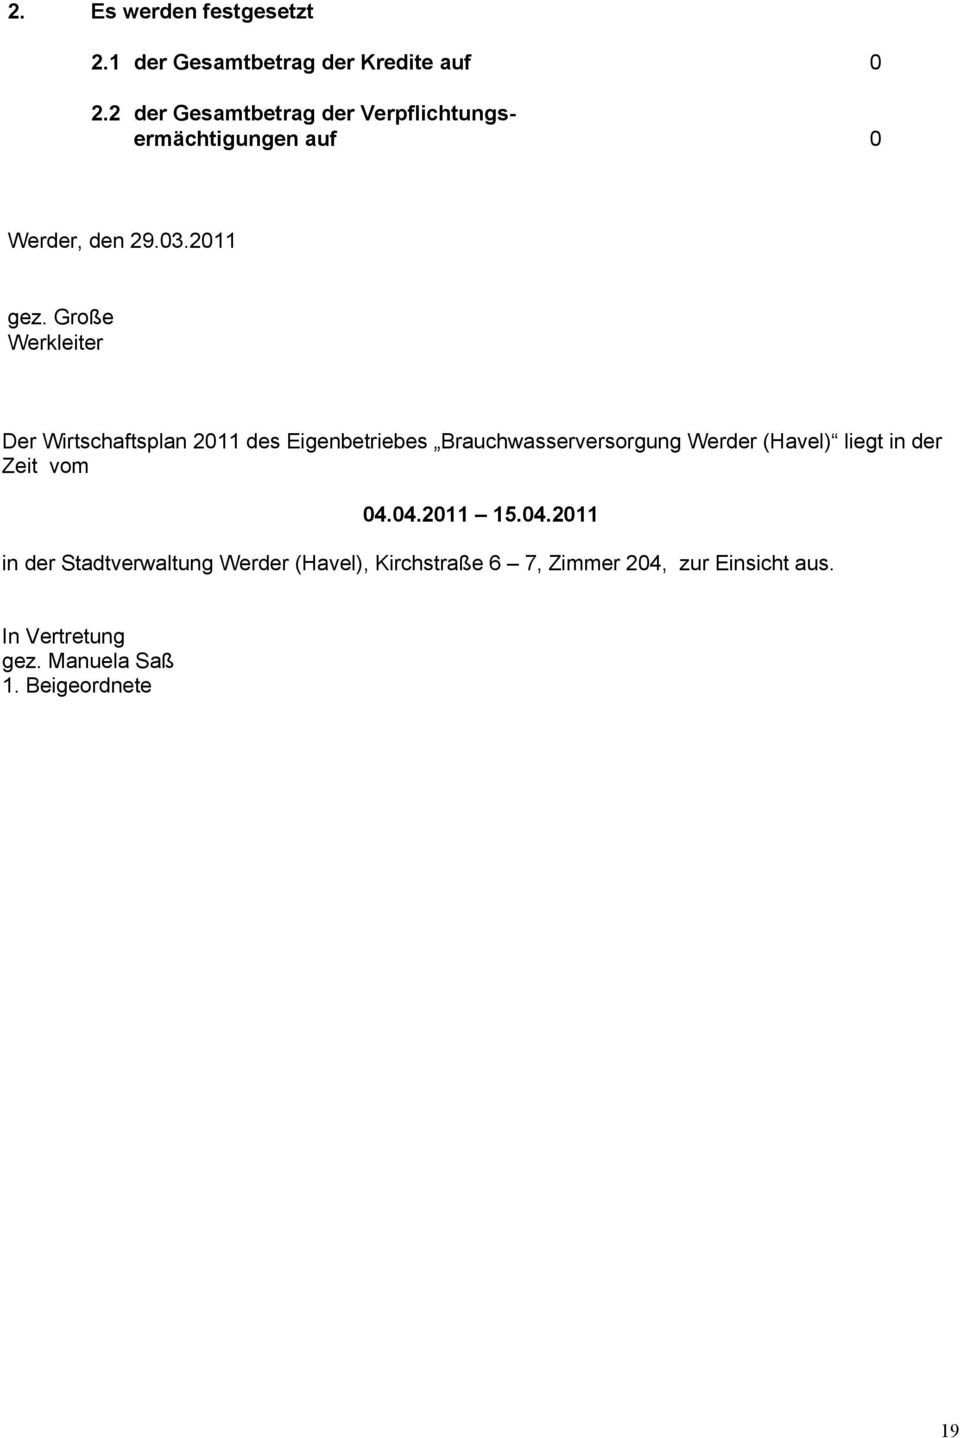 2011 Große Werkleiter Der Wirtschaftsplan 2011 des Eigenbetriebes Brauchwasserversorgung Werder (Havel)